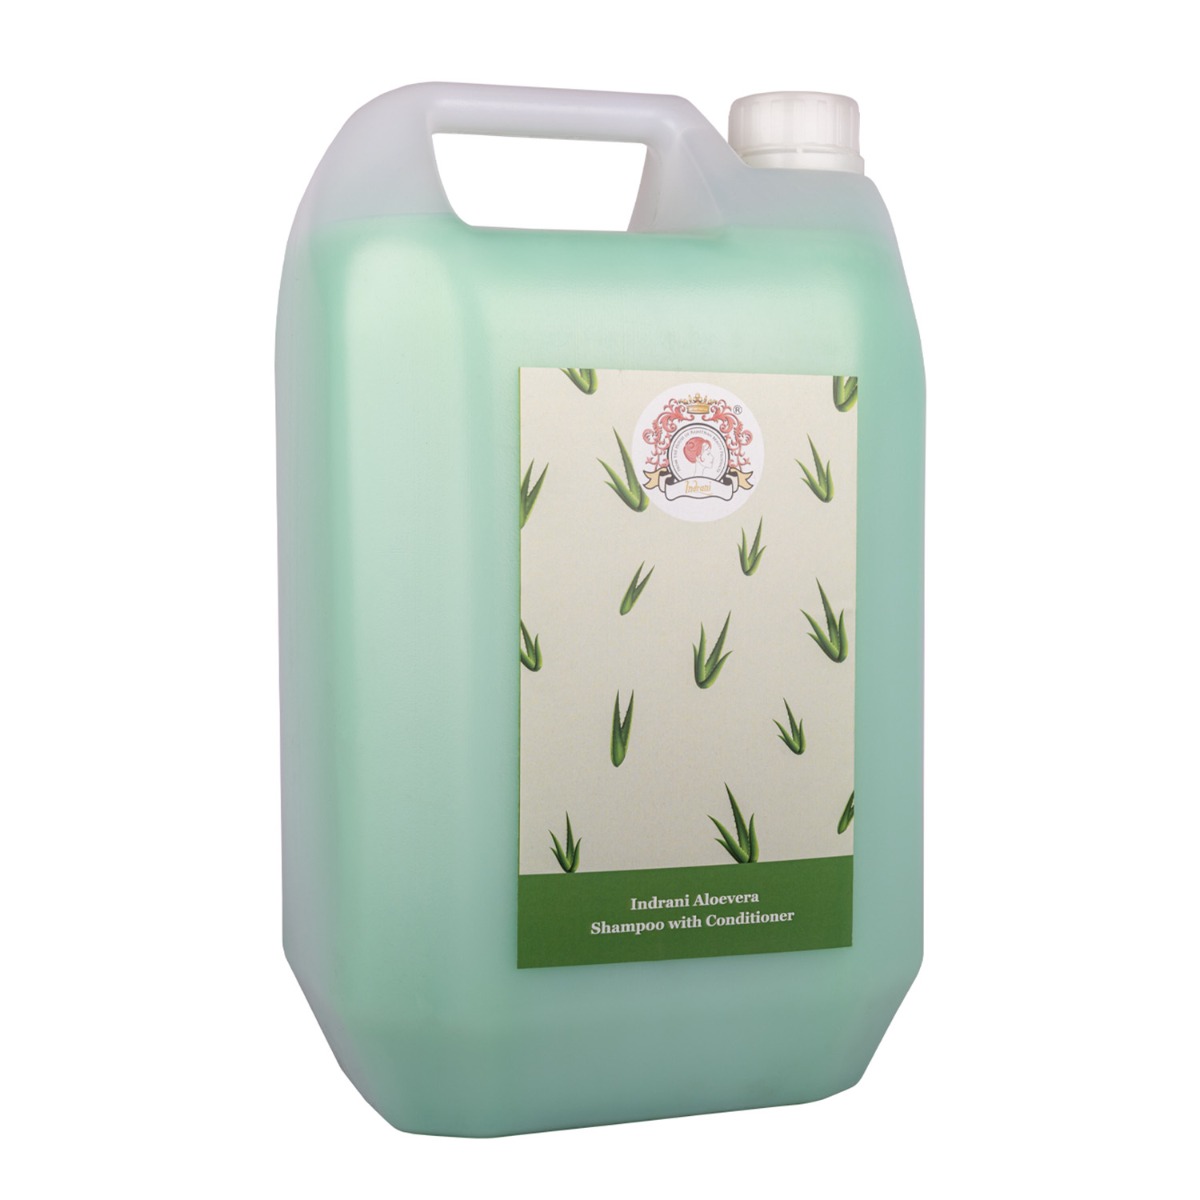 Indrani Aloevera Shampoo With Conditioner, 5ltr